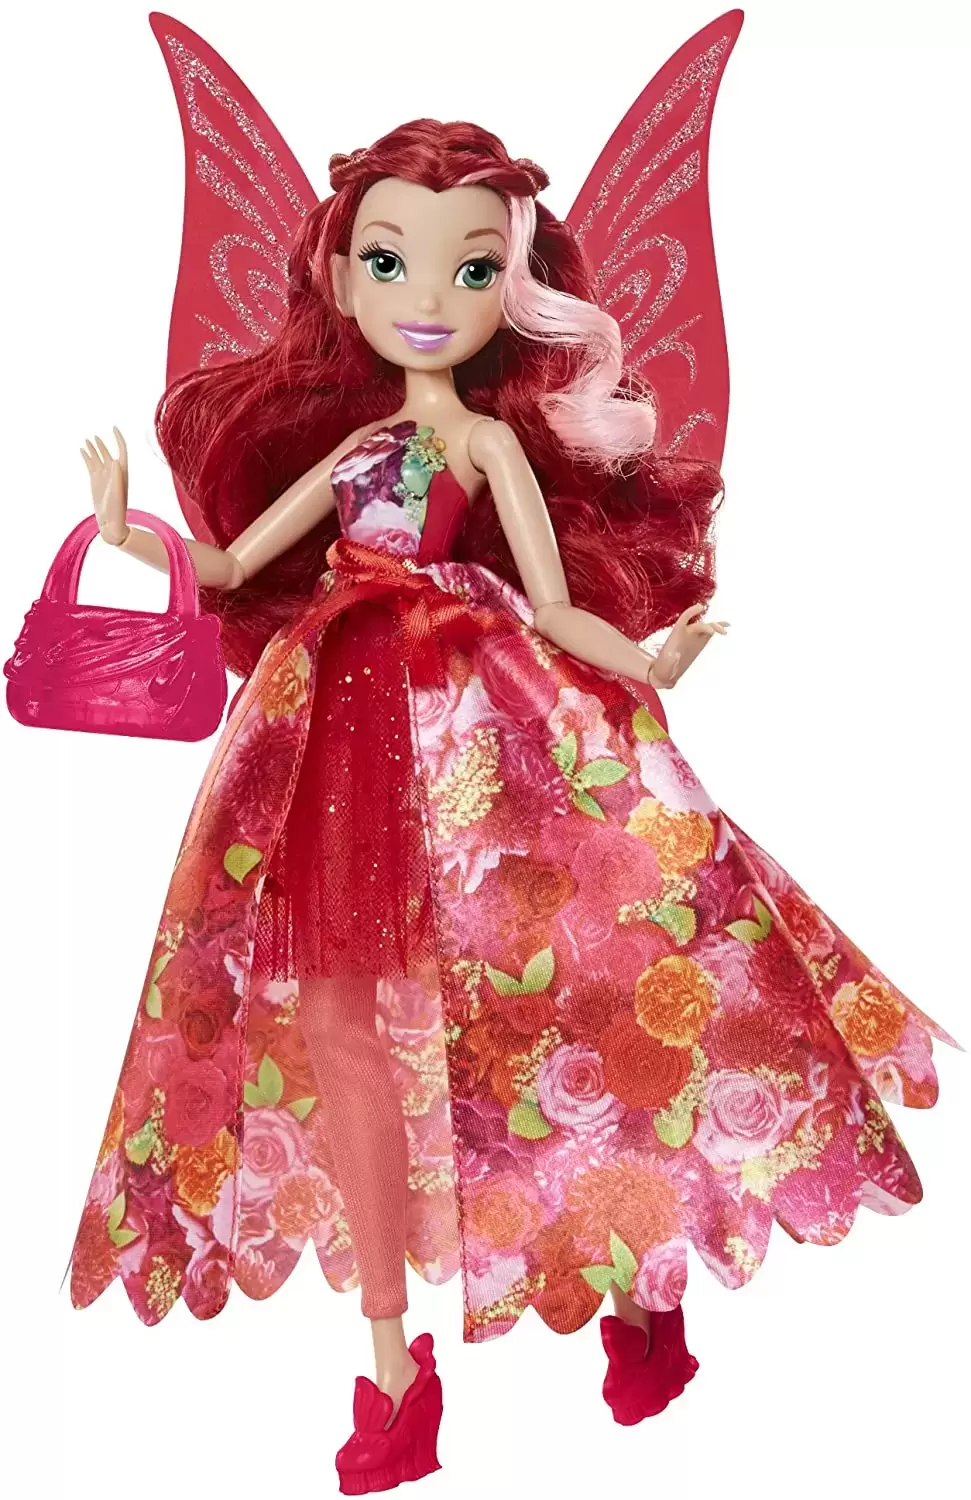 Rosetta - Disney Fairies doll